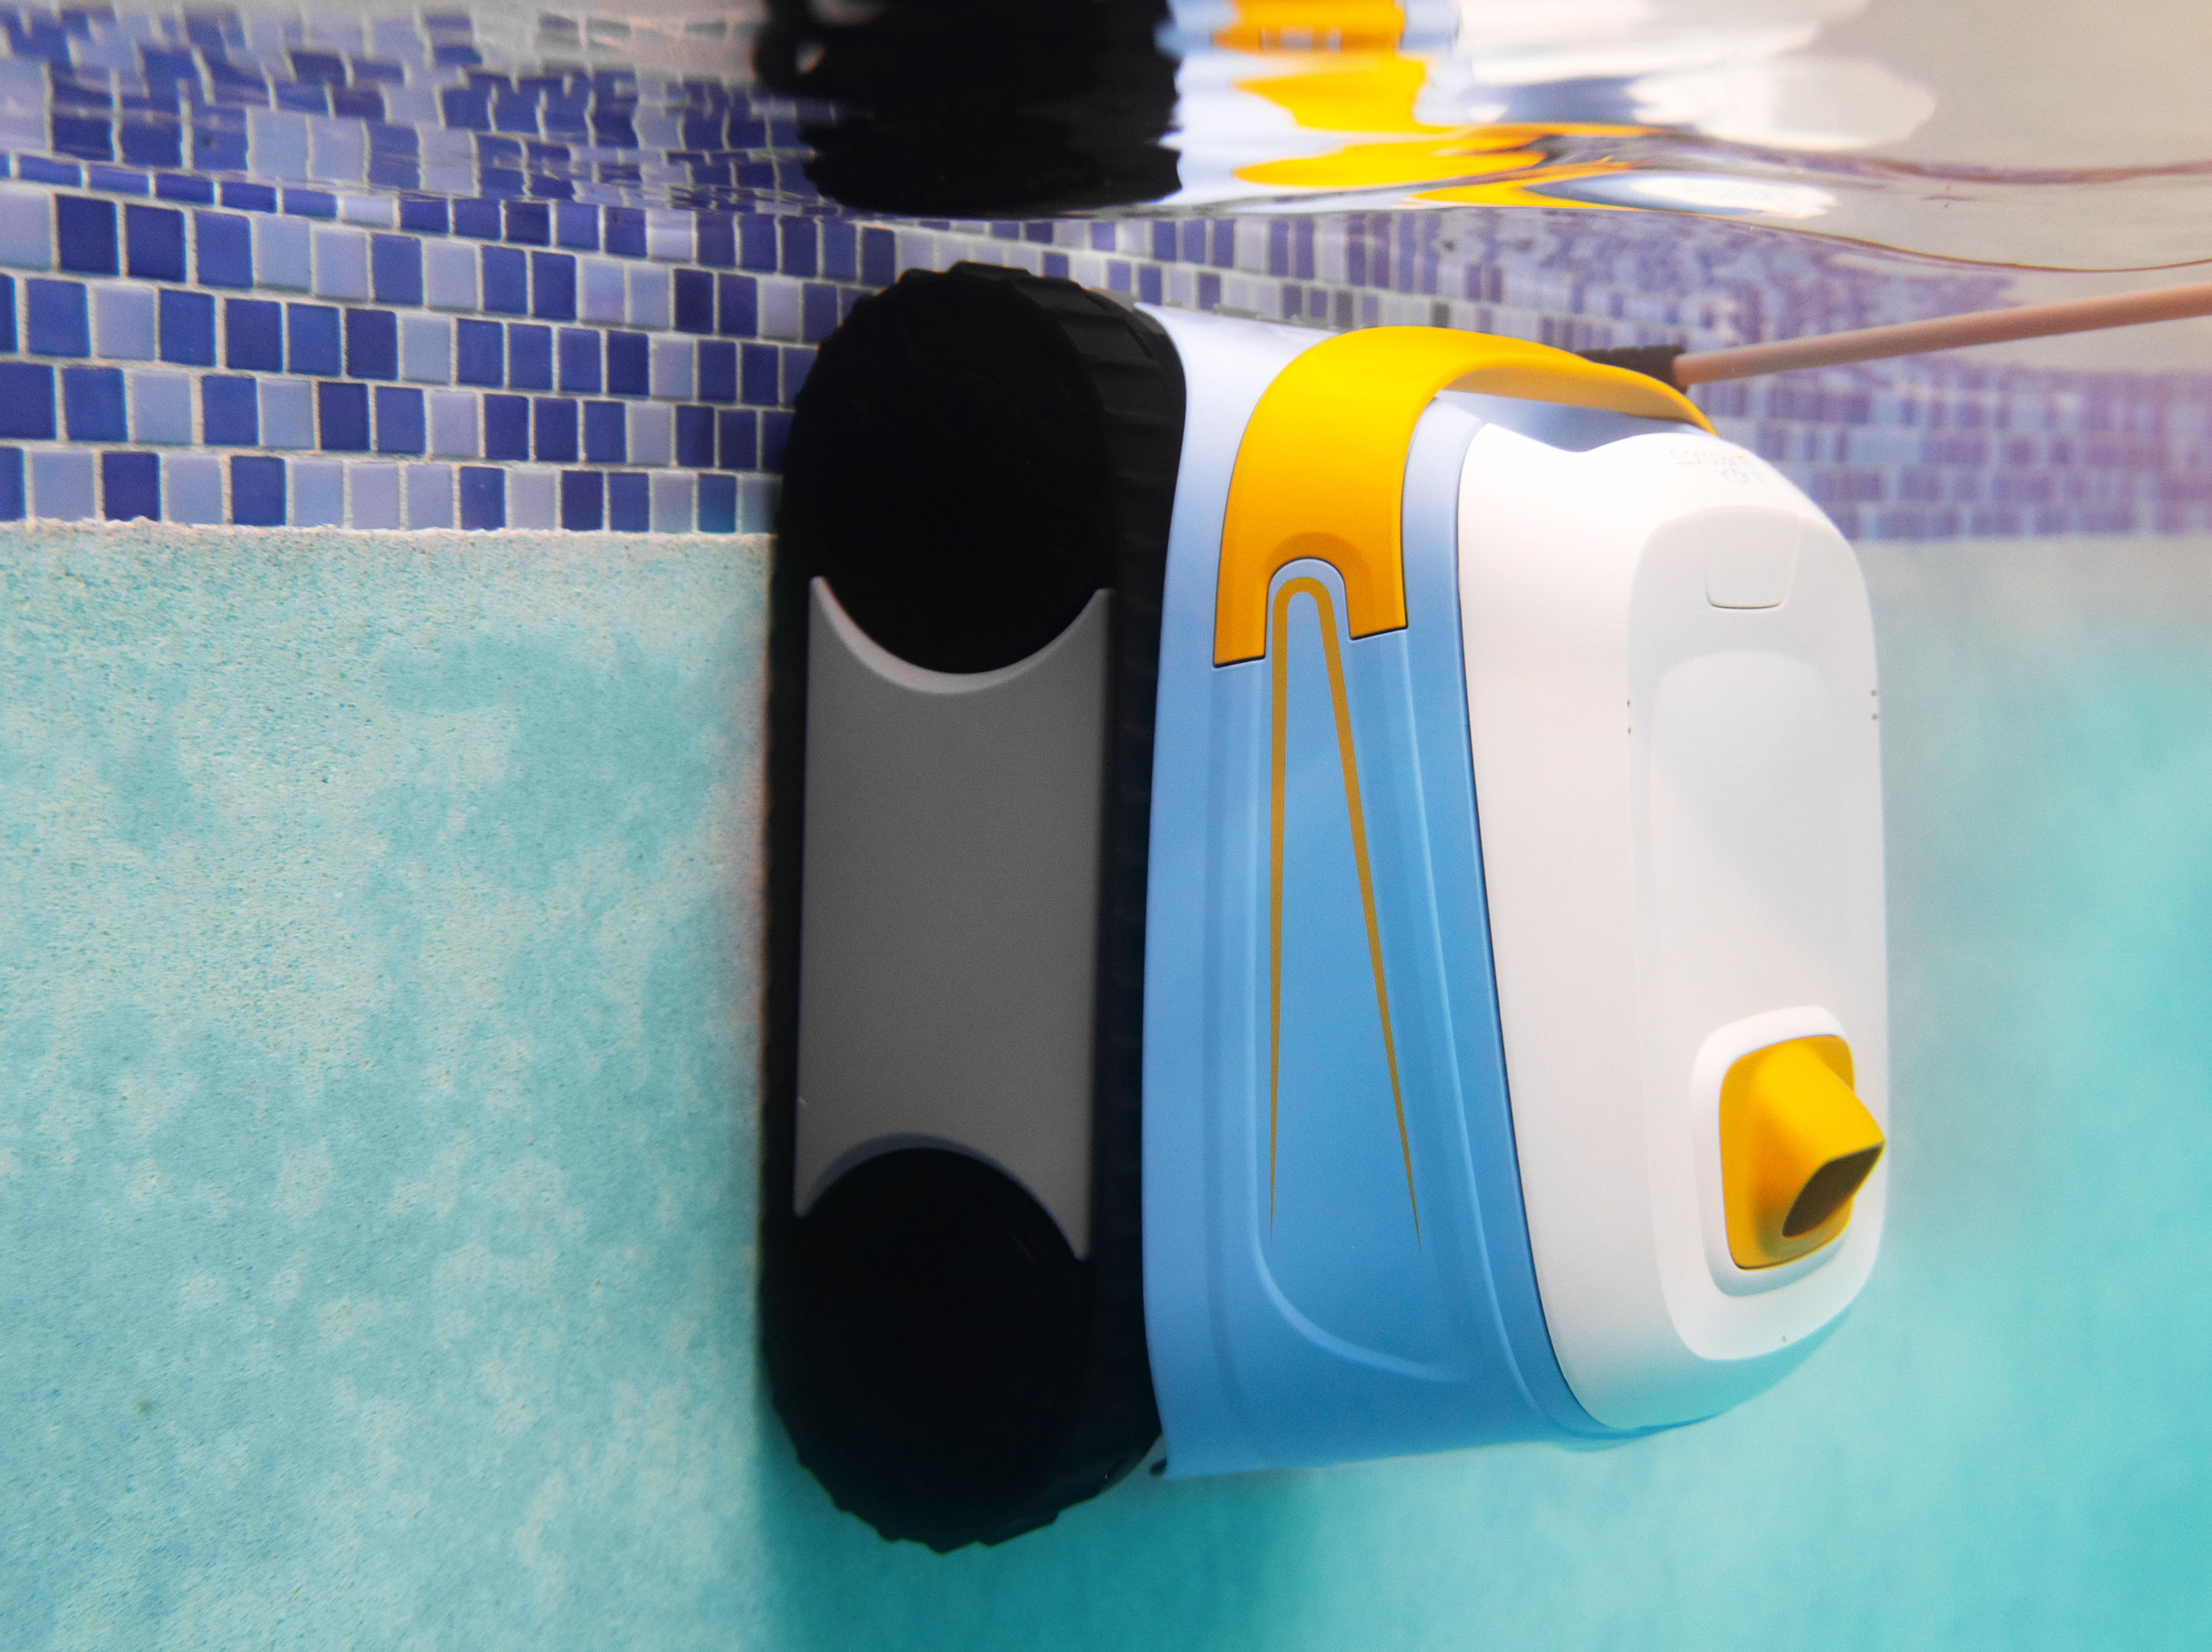 Aqua Products Evo 614 iQ Smart Robotic Pool Cleaner